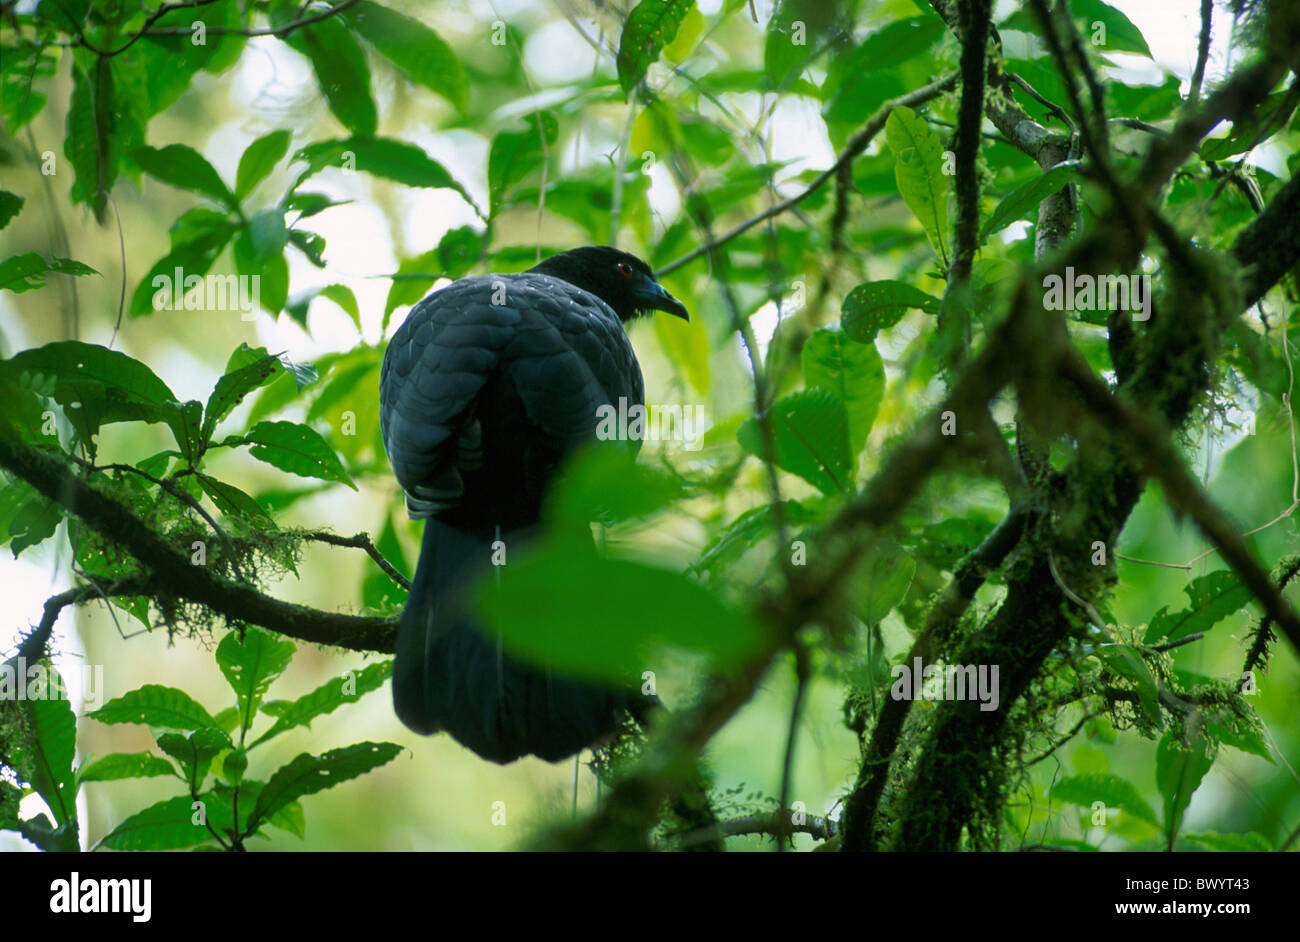 Animali Animali uccelli bird black Cloud Forest Reserva Santa Helena Costa Rica America centrale la natura primeva Foto Stock